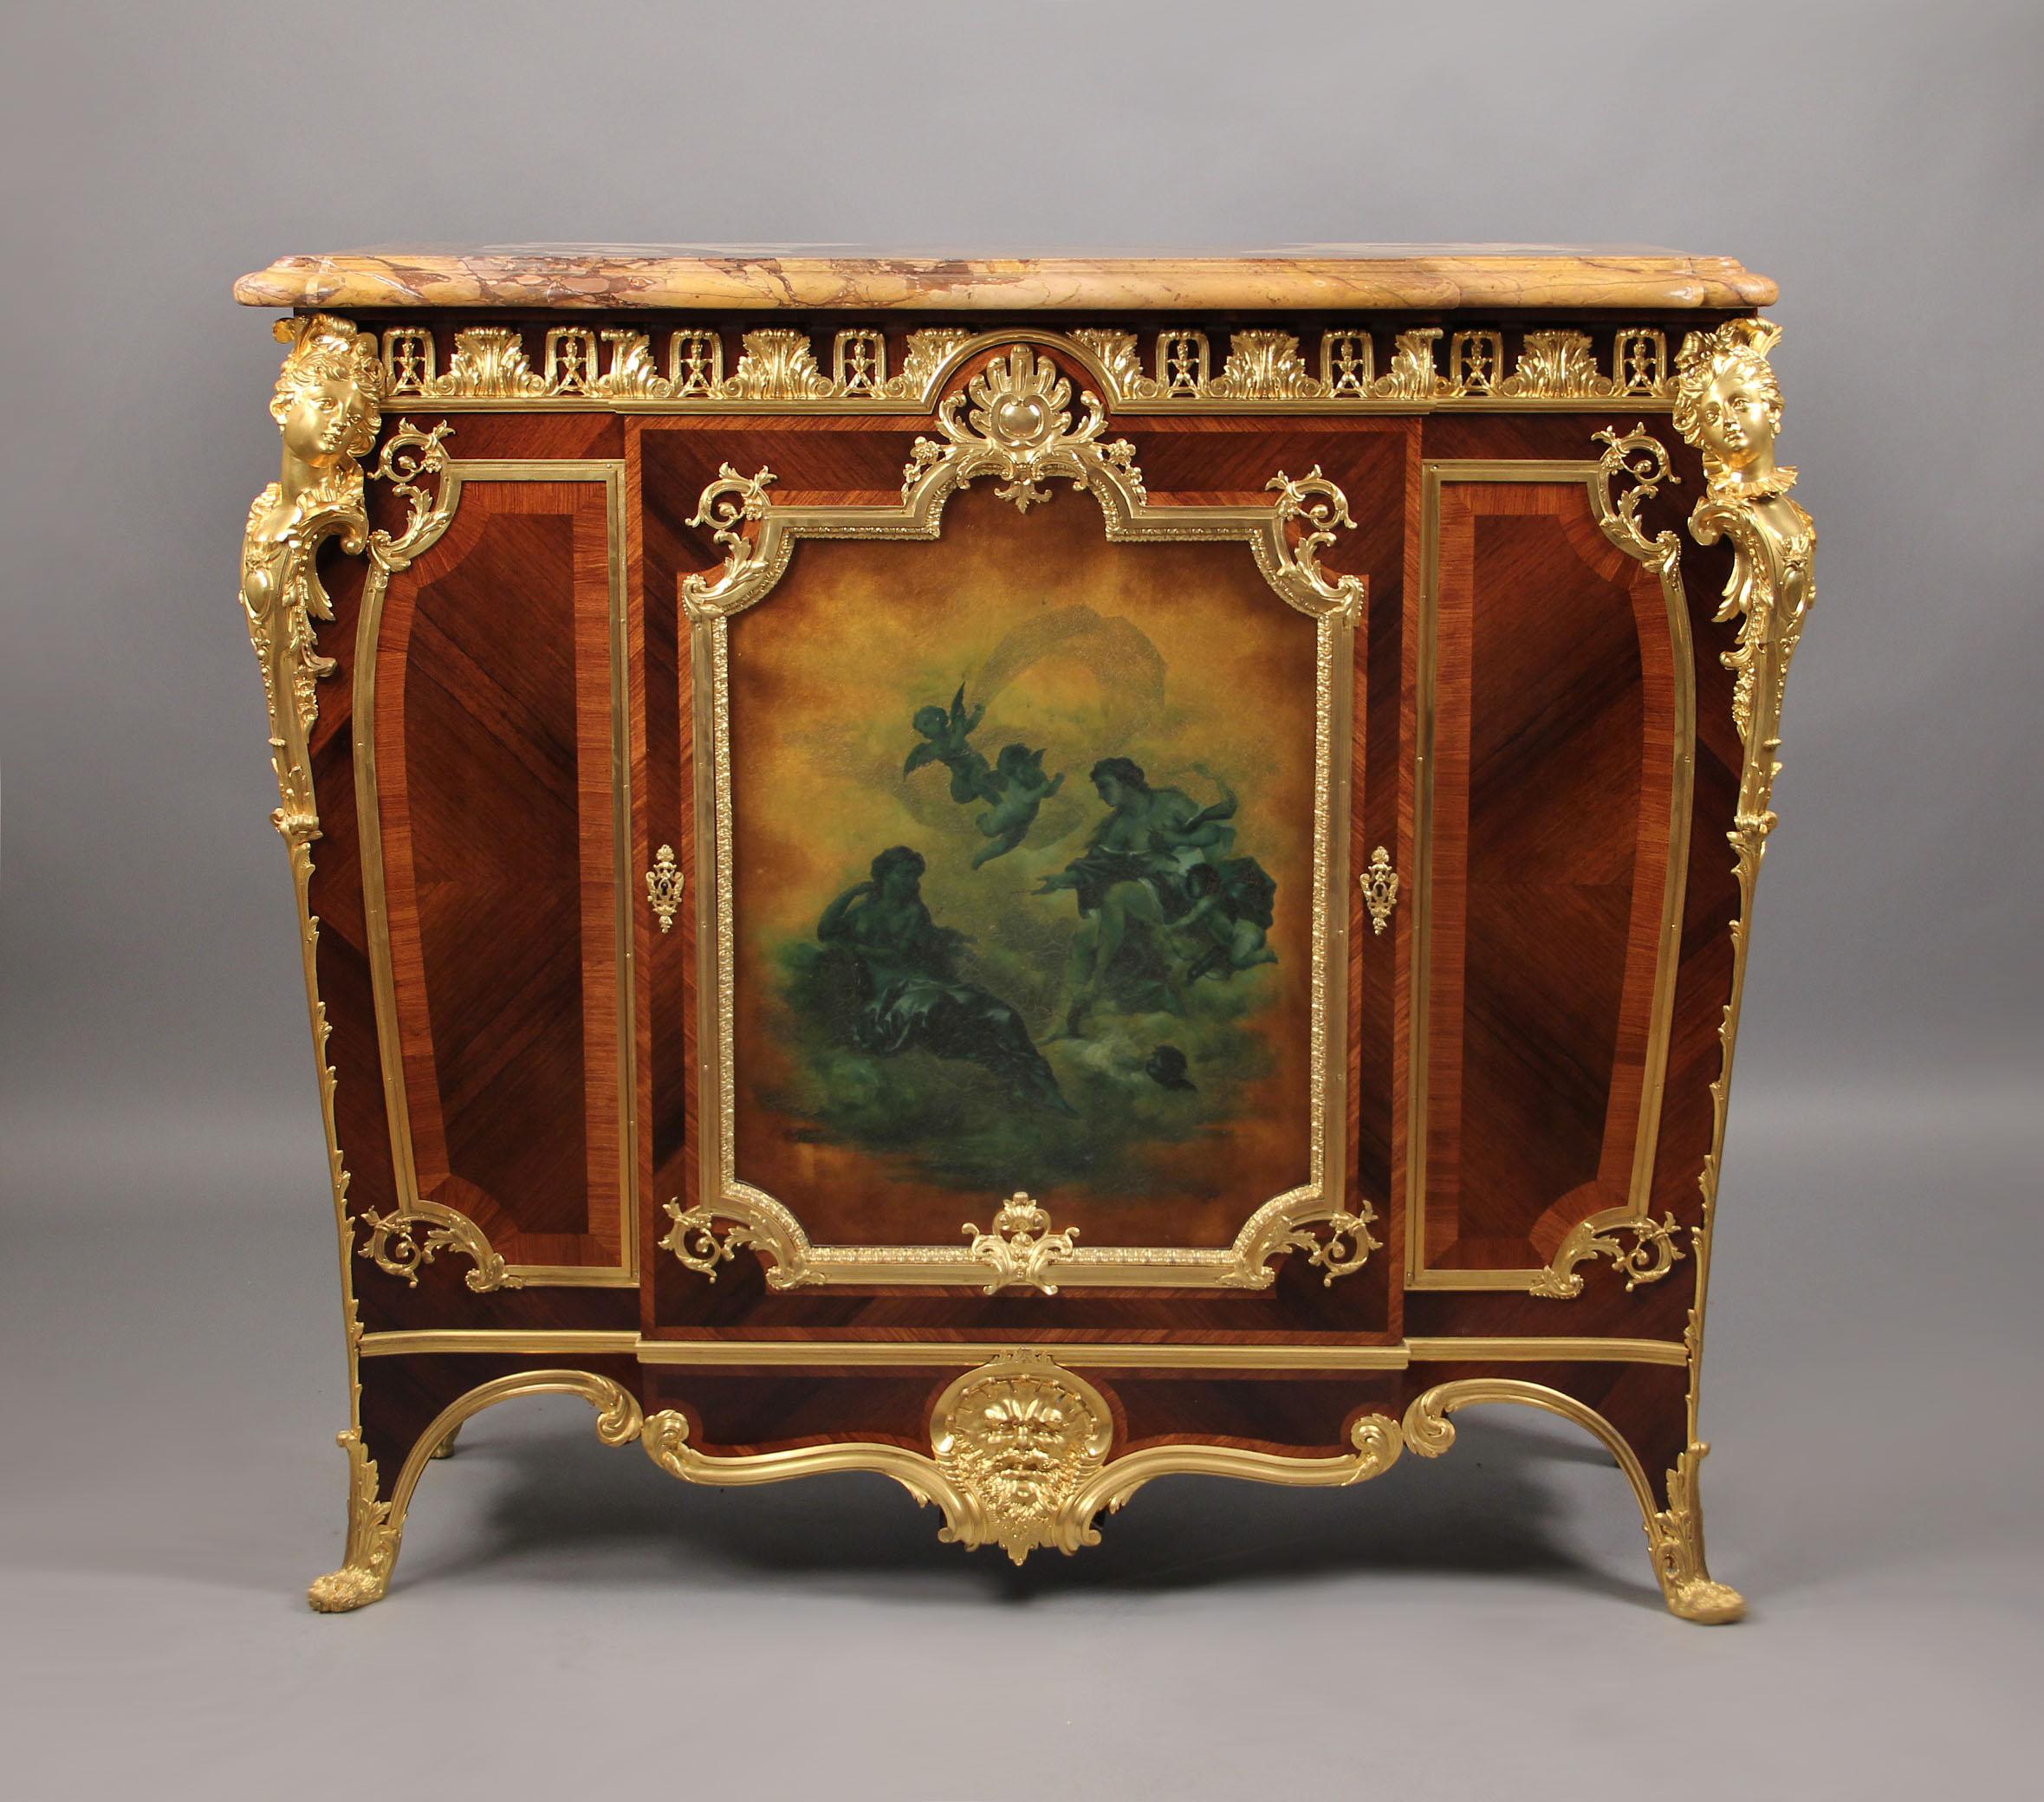 Très beau cabinet de la fin du 19e siècle en bronze doré, de style Louis XV, de marque Martin.

Par Joseph Zwiener.

Le panneau central de la porte, finement décoré, présente une scène allégorique du 